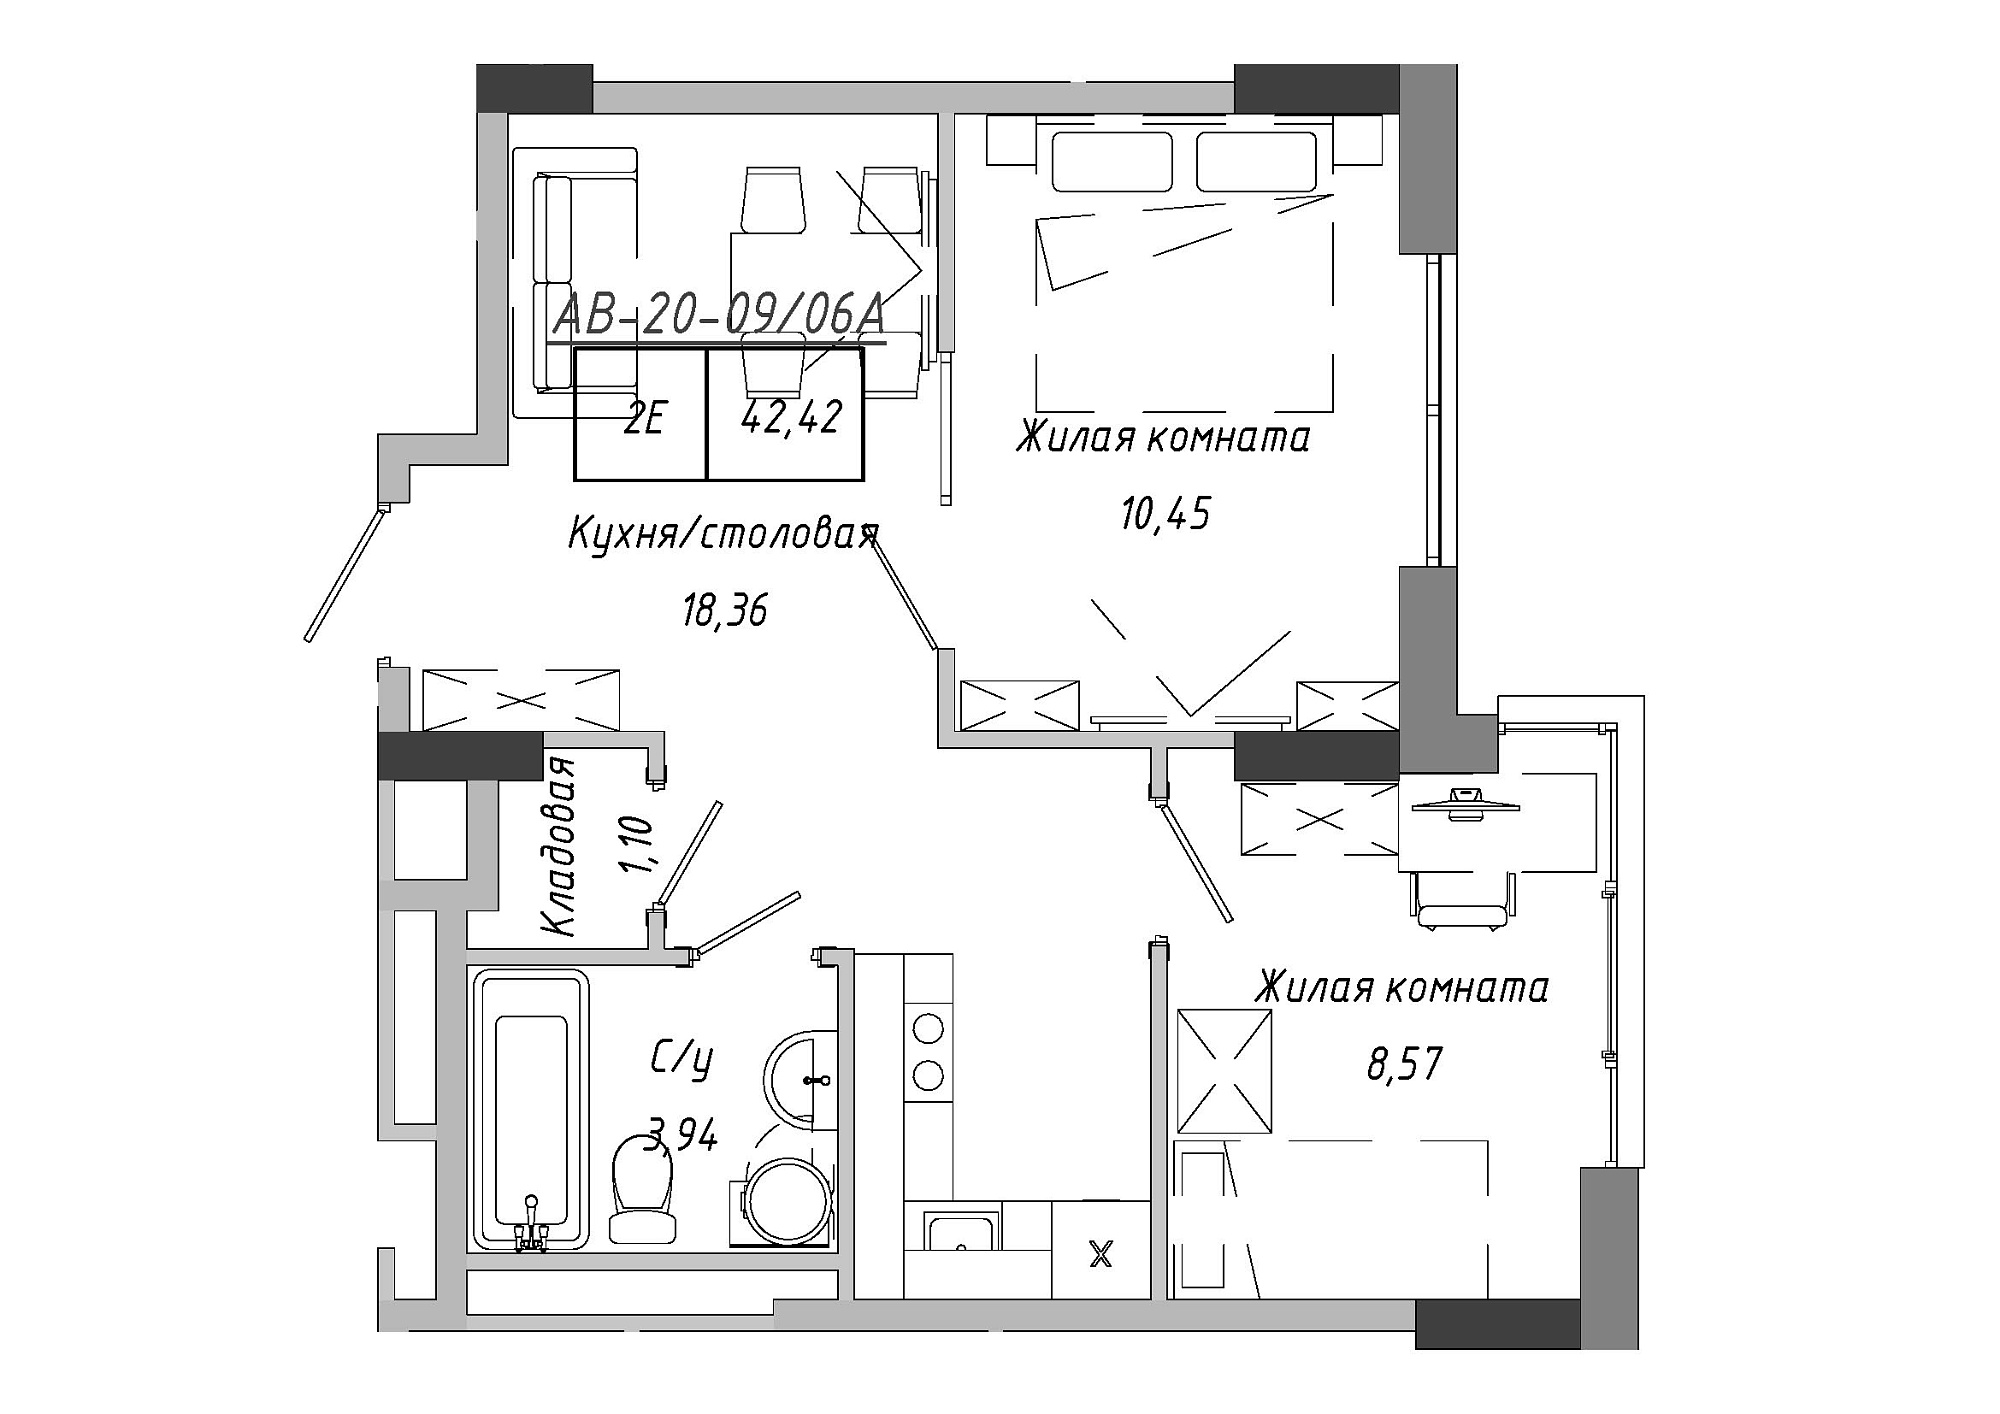 Планировка 2-к квартира площей 42.85м2, AB-20-09/0006а.